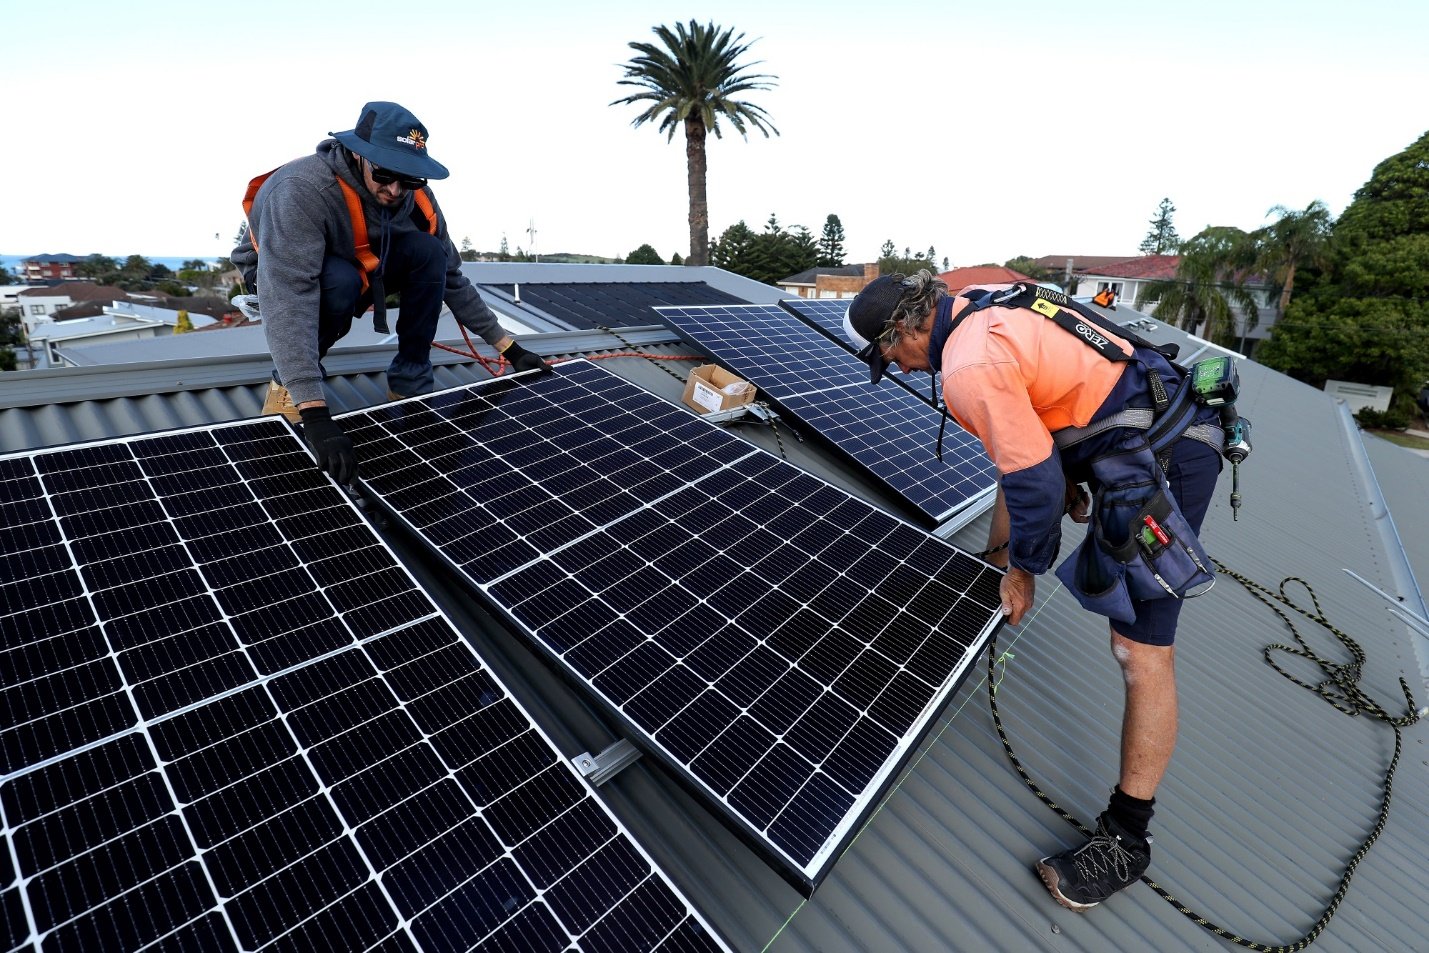 تركيب الألواح الشمسية على سطح أحد المساكن بمدينة سيدني في أستراليا